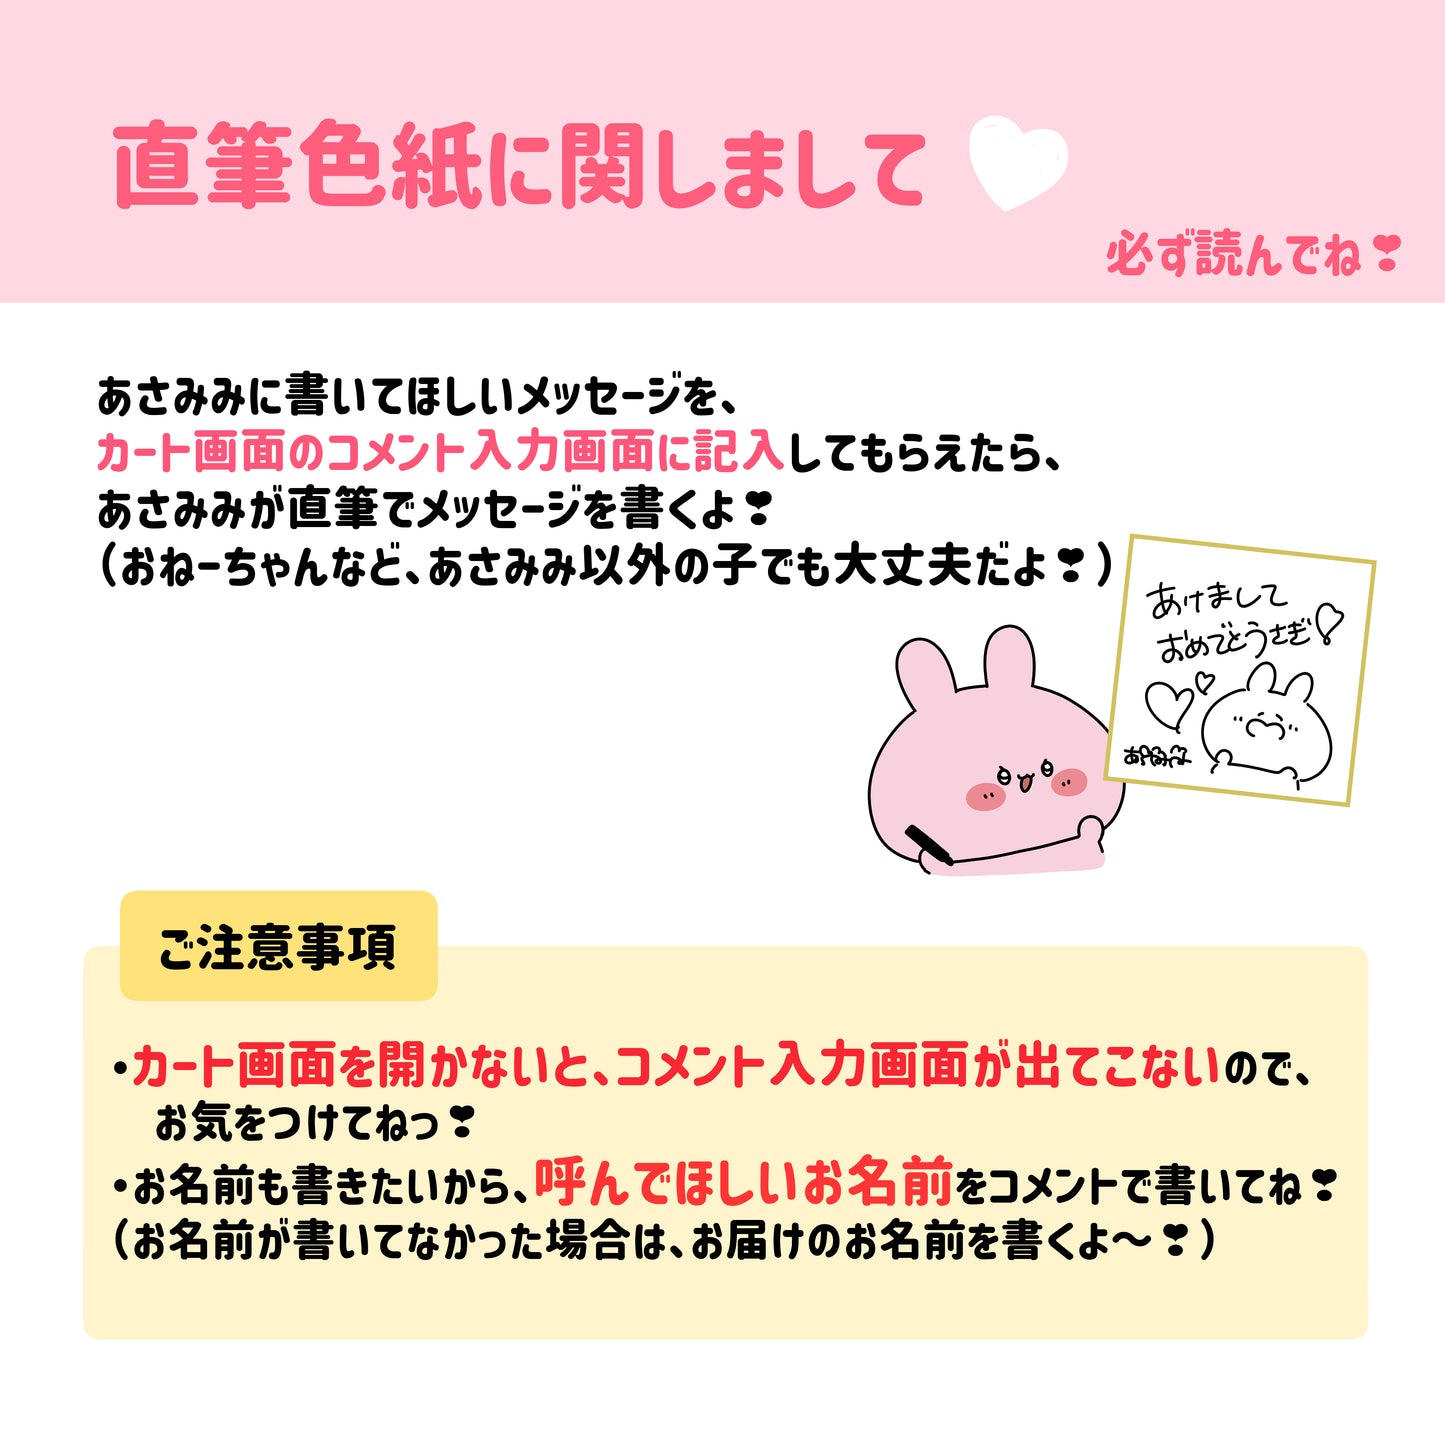 [Asamimi-chan] ASAMIMI HAPPY BAG 2024 (¥10,000) [Shipped in mid-January]